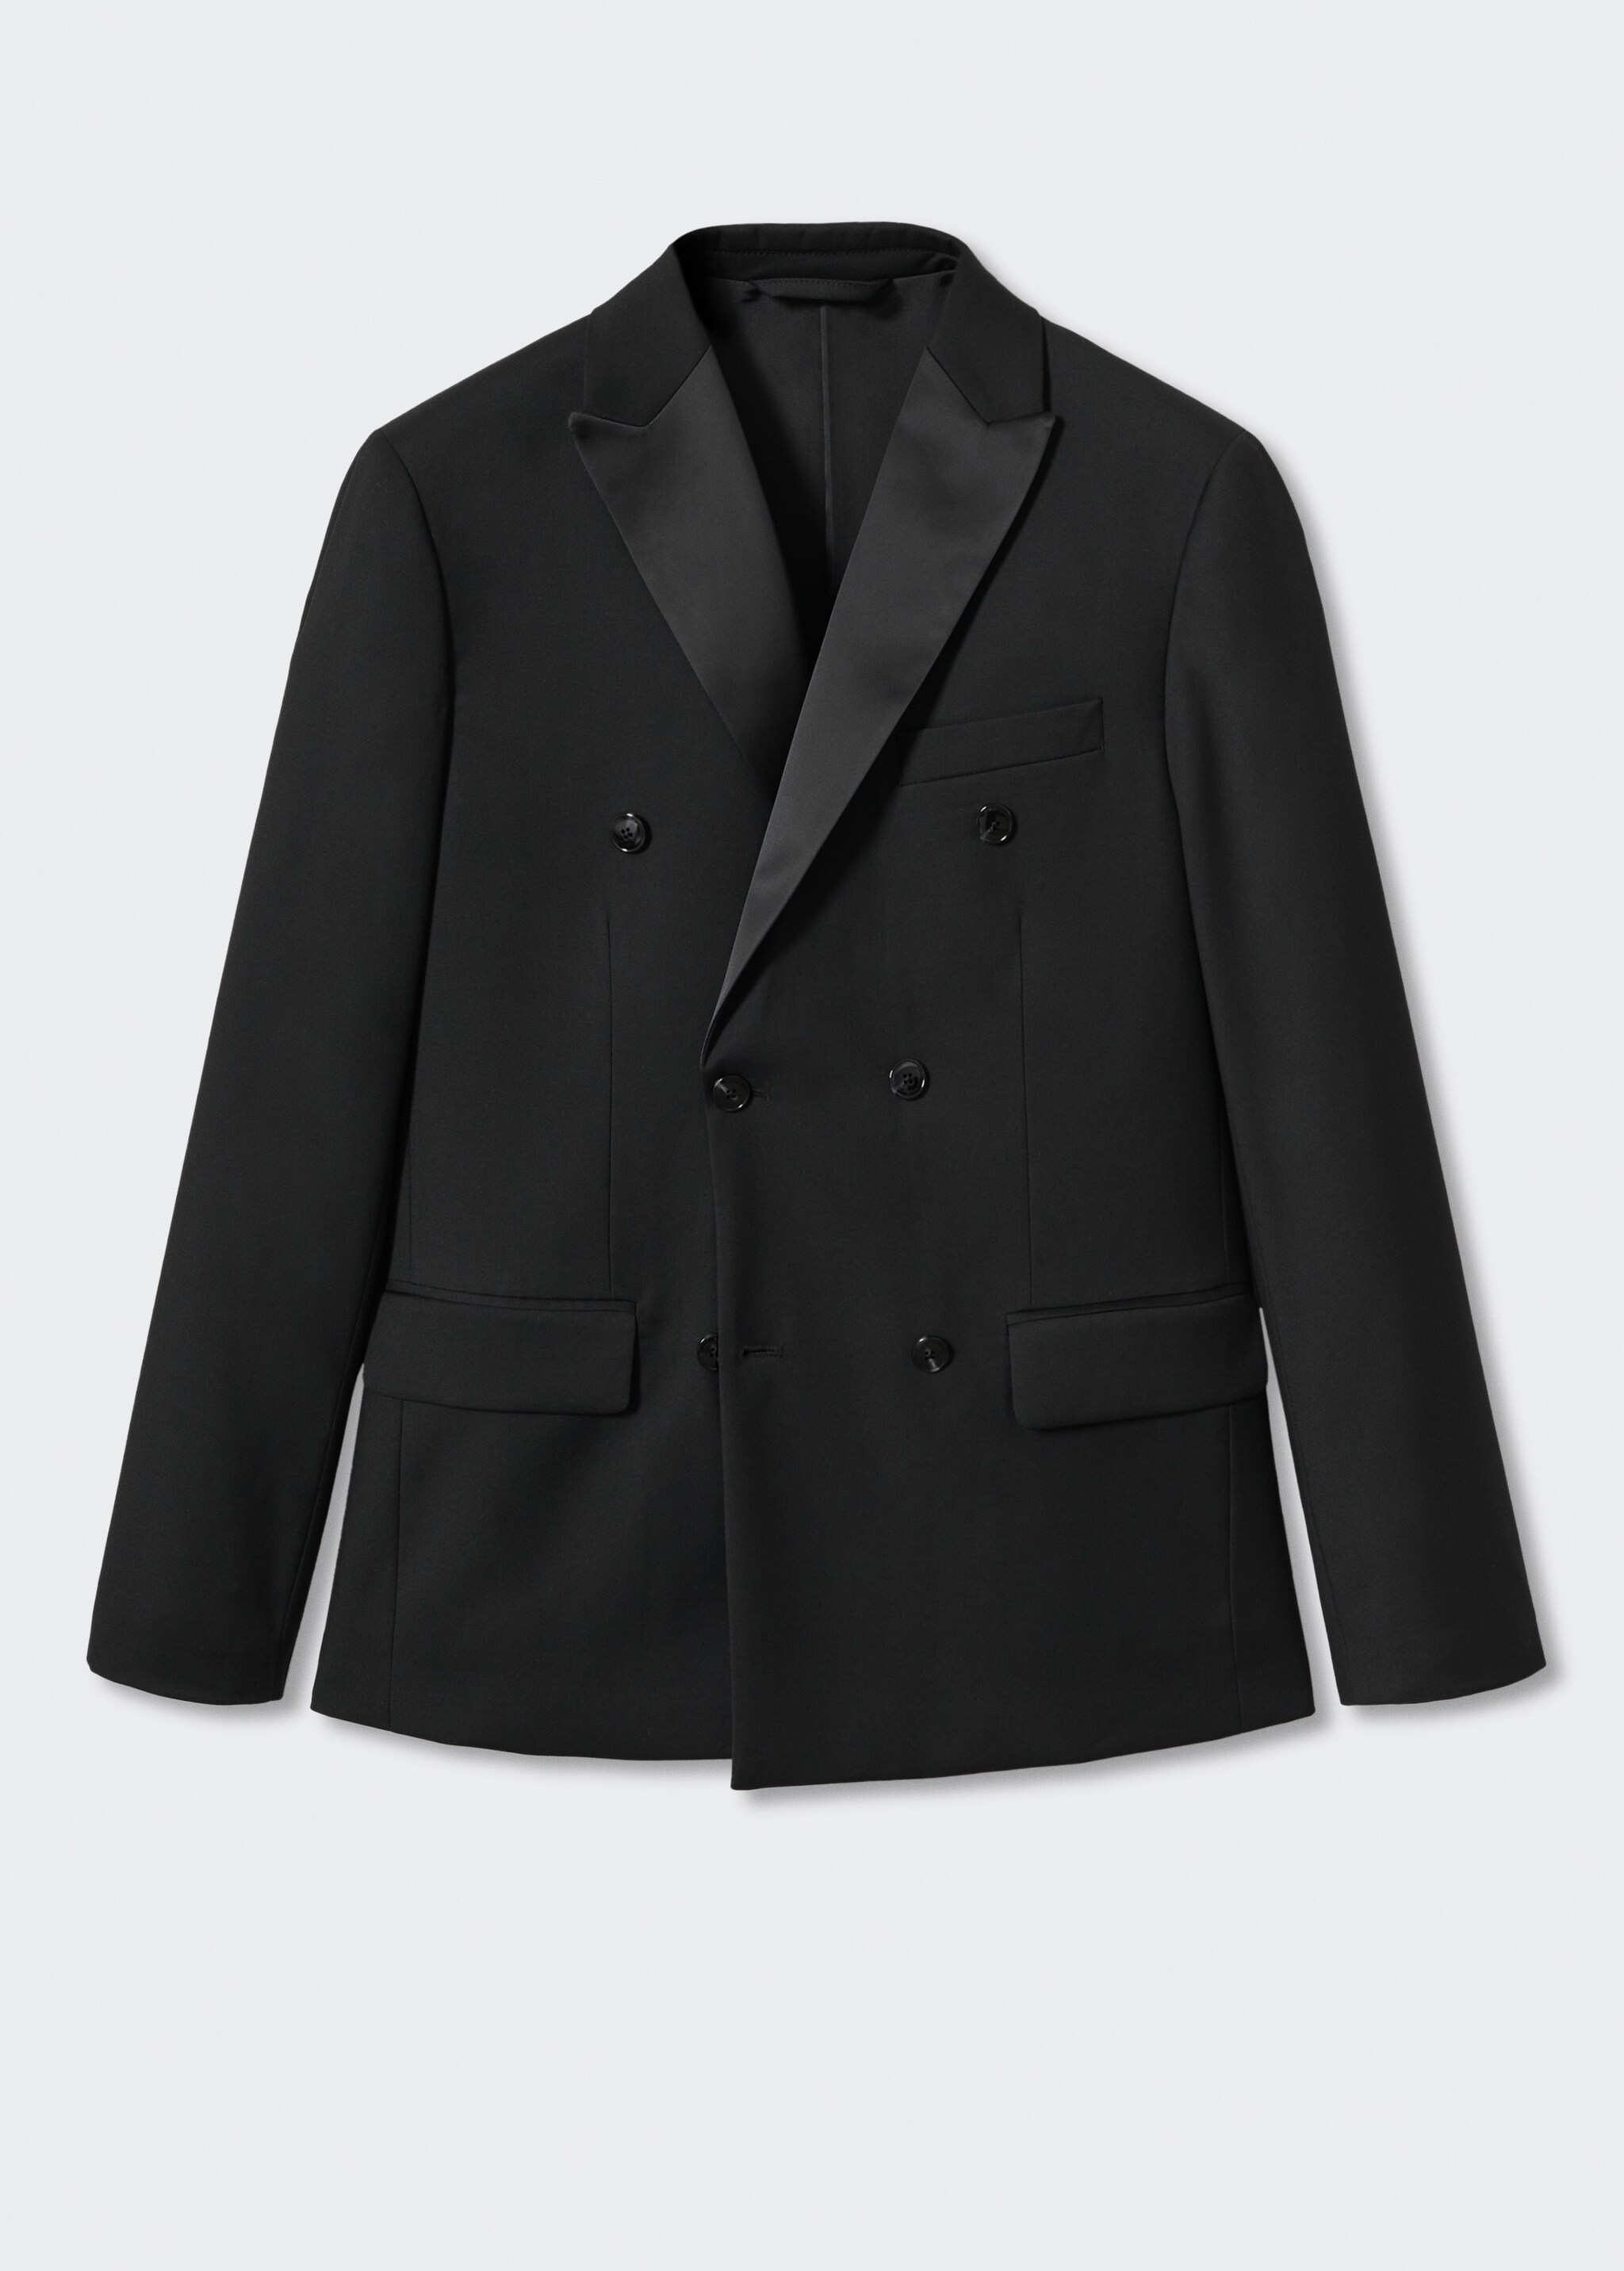 Satin lapels suit blazer - Article without model